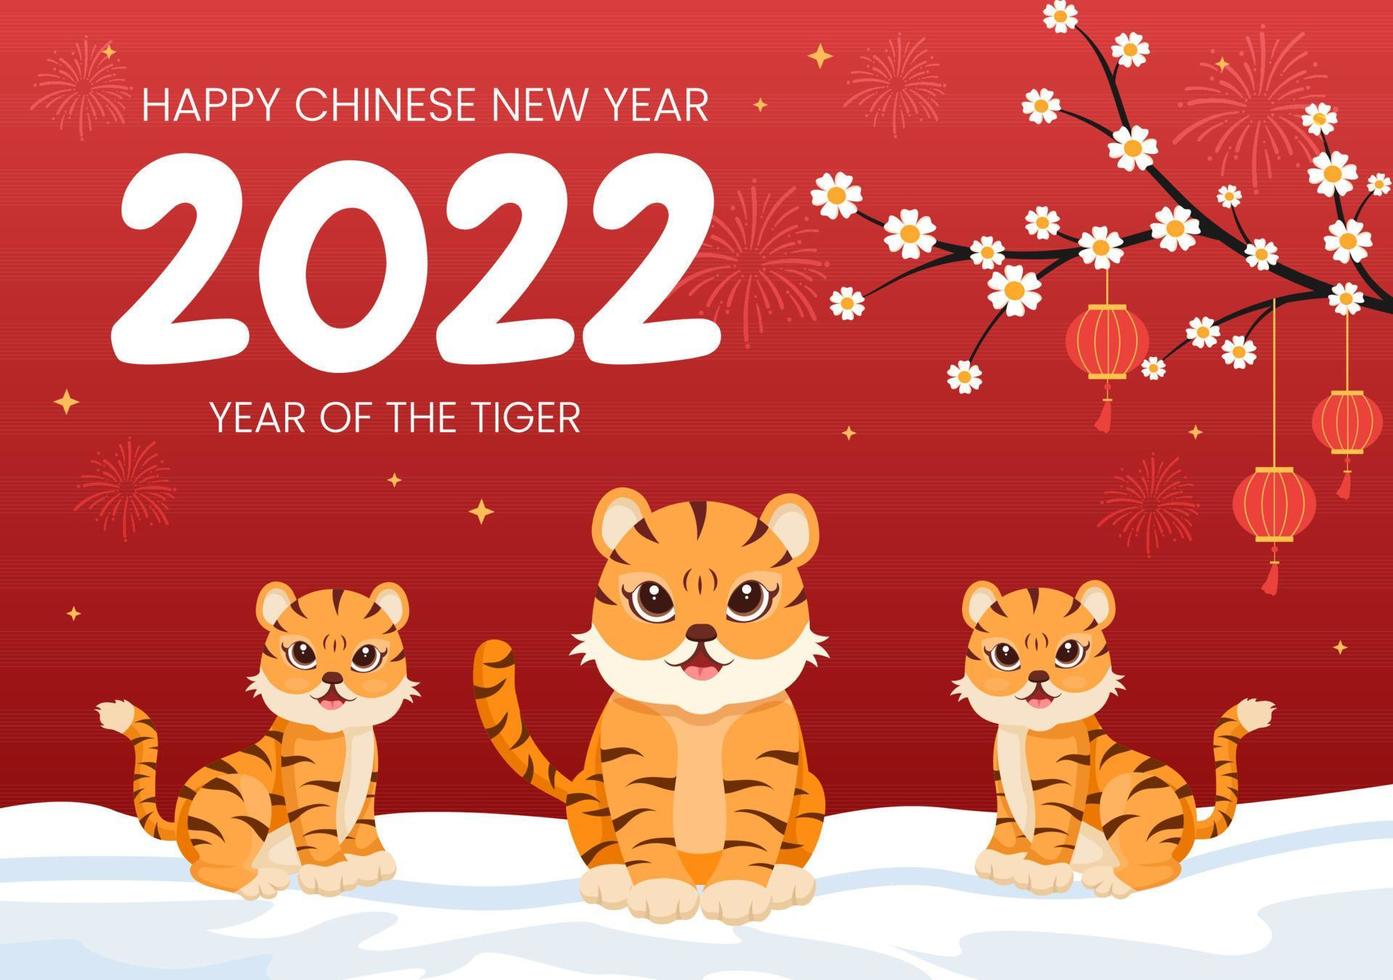 gott kinesiskt nytt år 2022 med zodiaken söt tiger och blomma på röd bakgrund för gratulationskort, kalender eller affisch i platt designillustration vektor